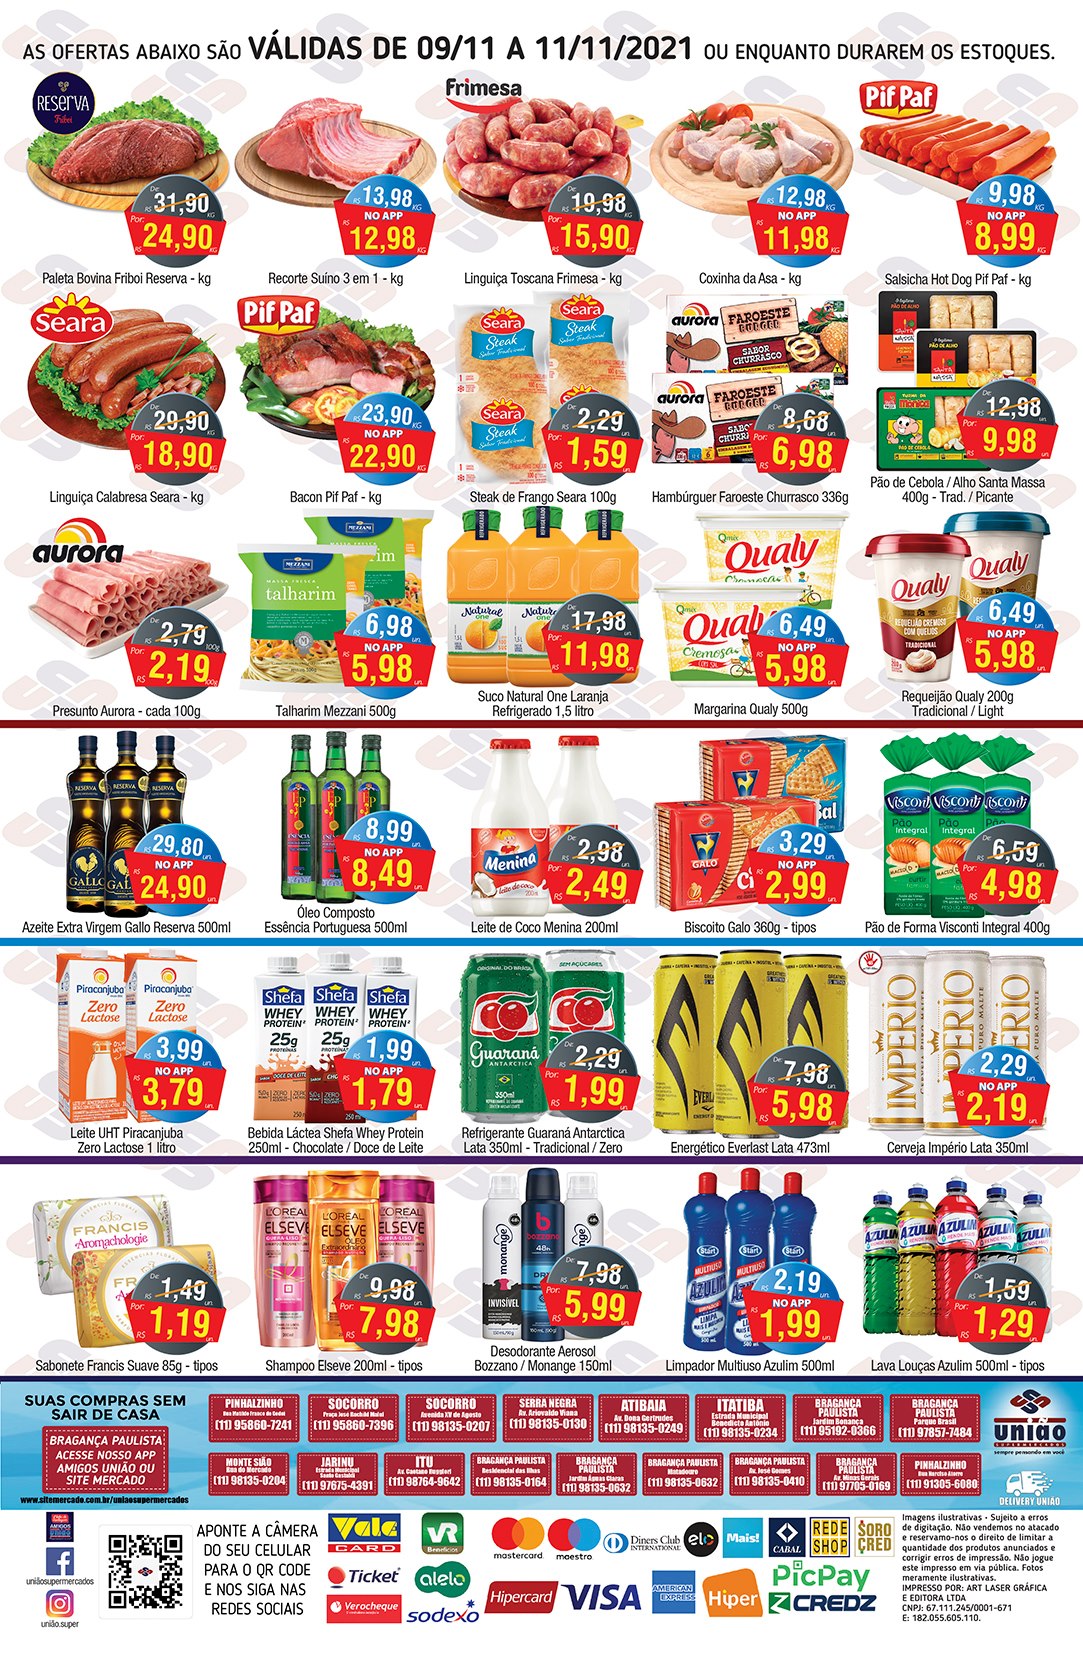 Quarta-feira de ofertas no açougue, bebidas, embutidos e hortifrúti, no União Supermercados